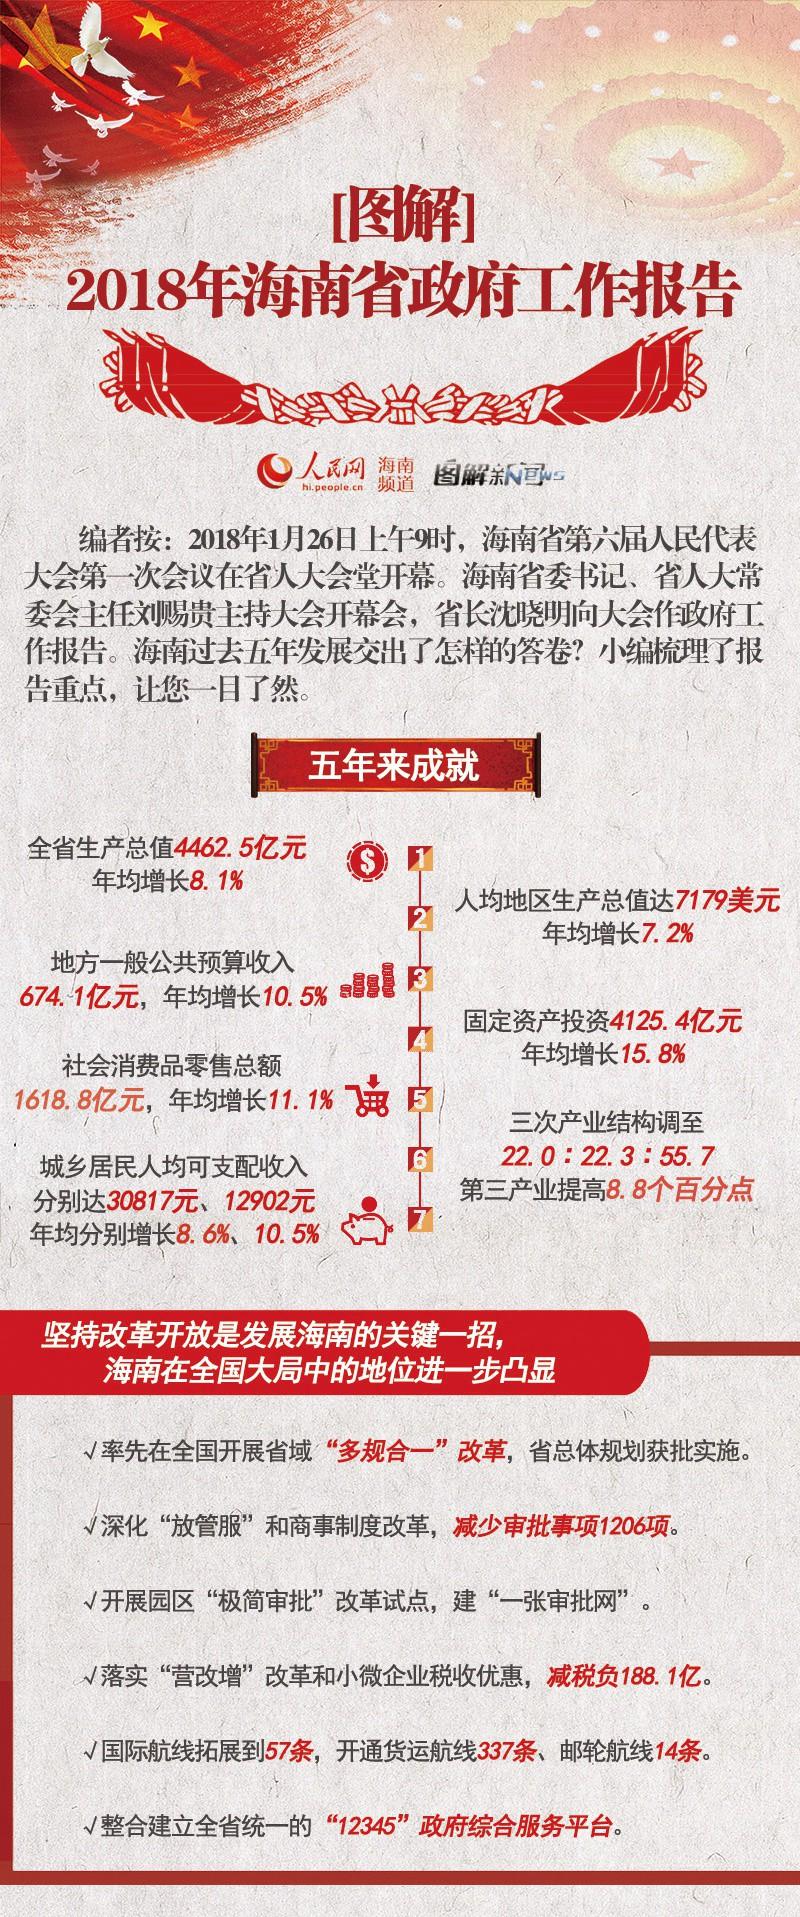 一张图读懂2018海南省政府工作报告